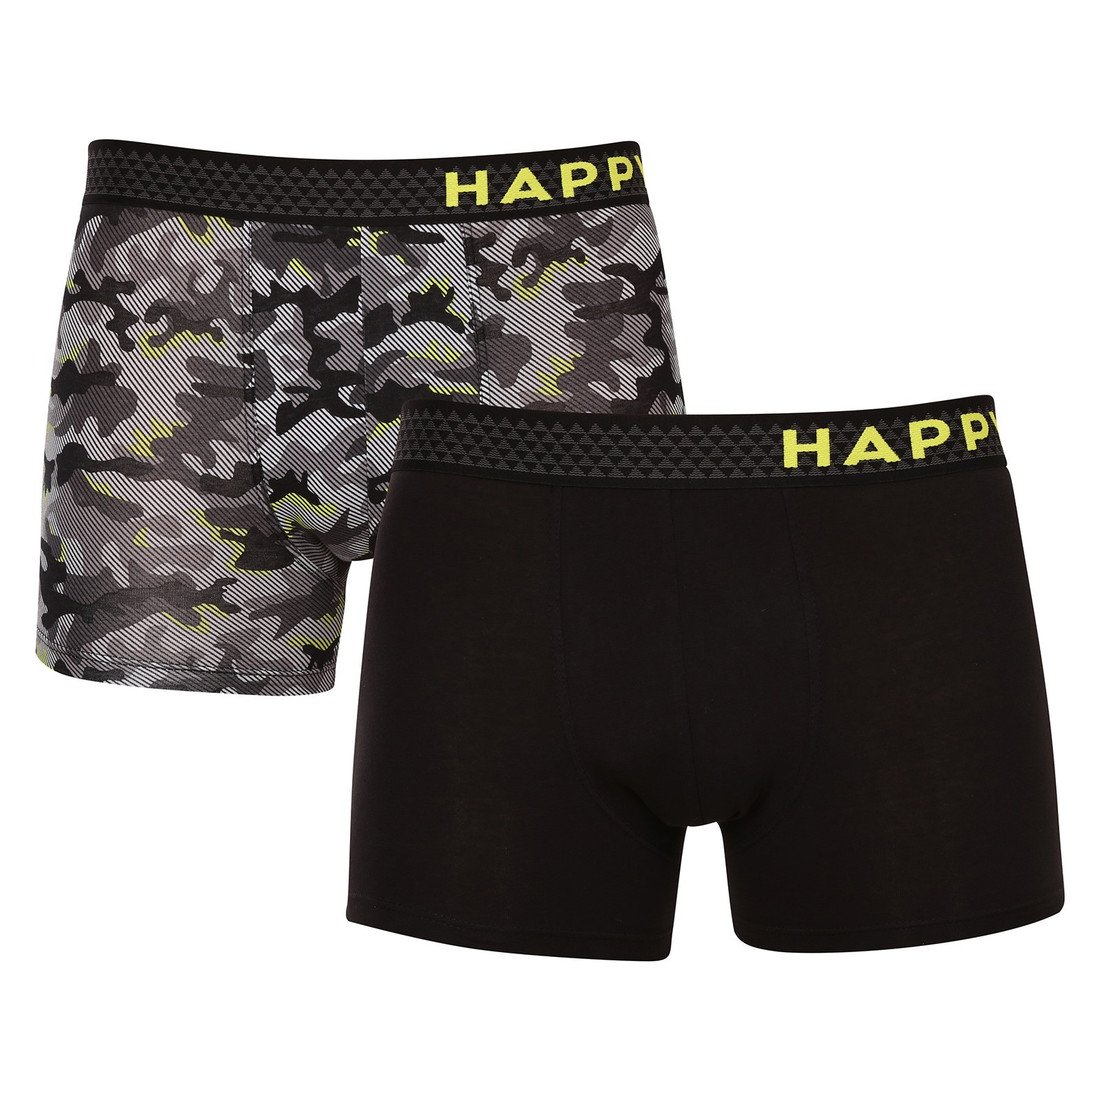 2PACK pánské boxerky Happy Shorts vícebarevné (HSJ 792) S